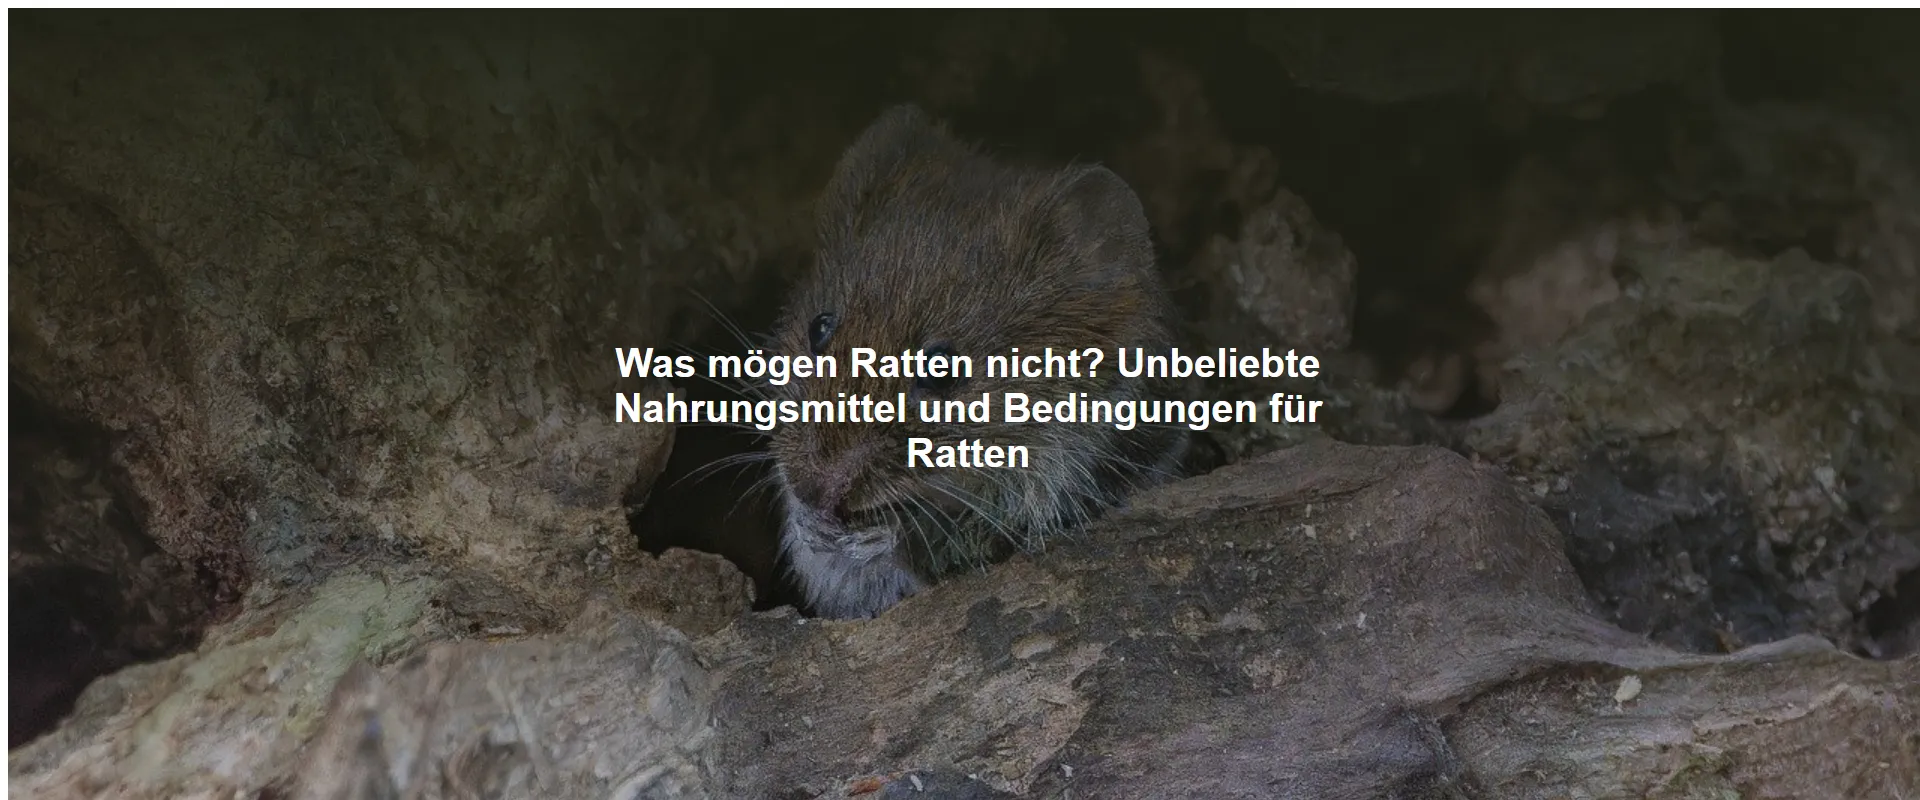 Was mögen Ratten nicht? Unbeliebte Nahrungsmittel und Bedingungen für Ratten